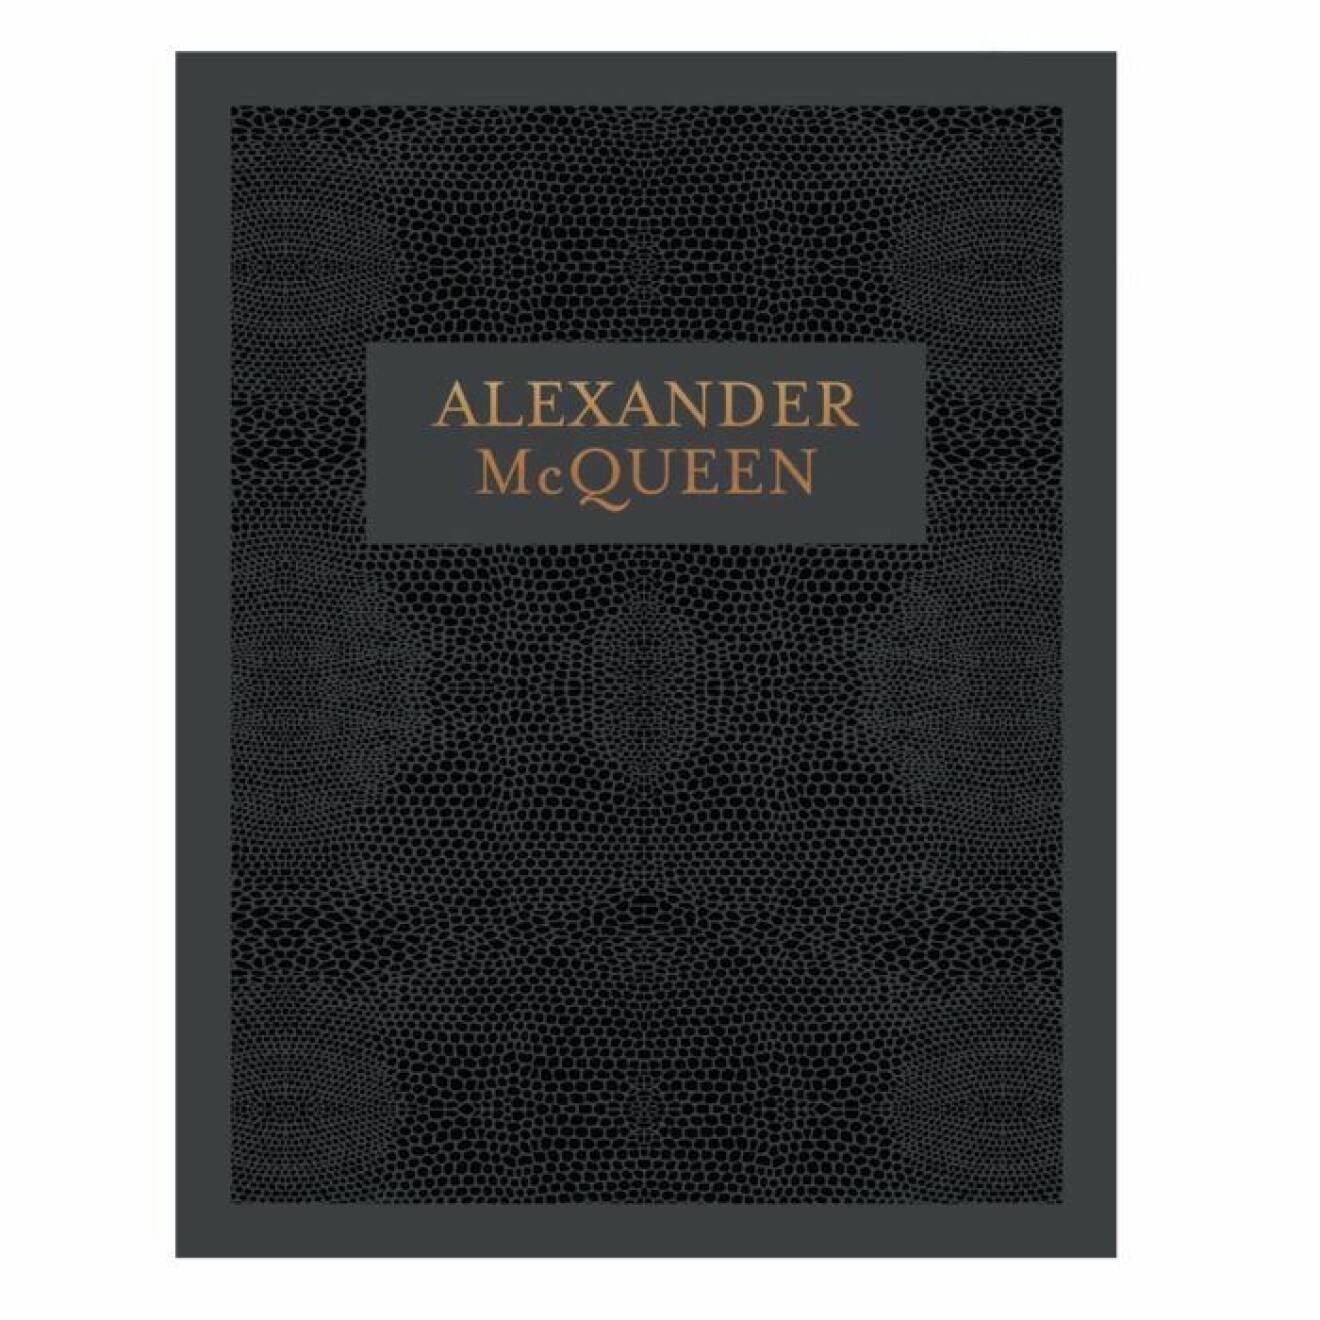 Alexander McQueen coffe table book